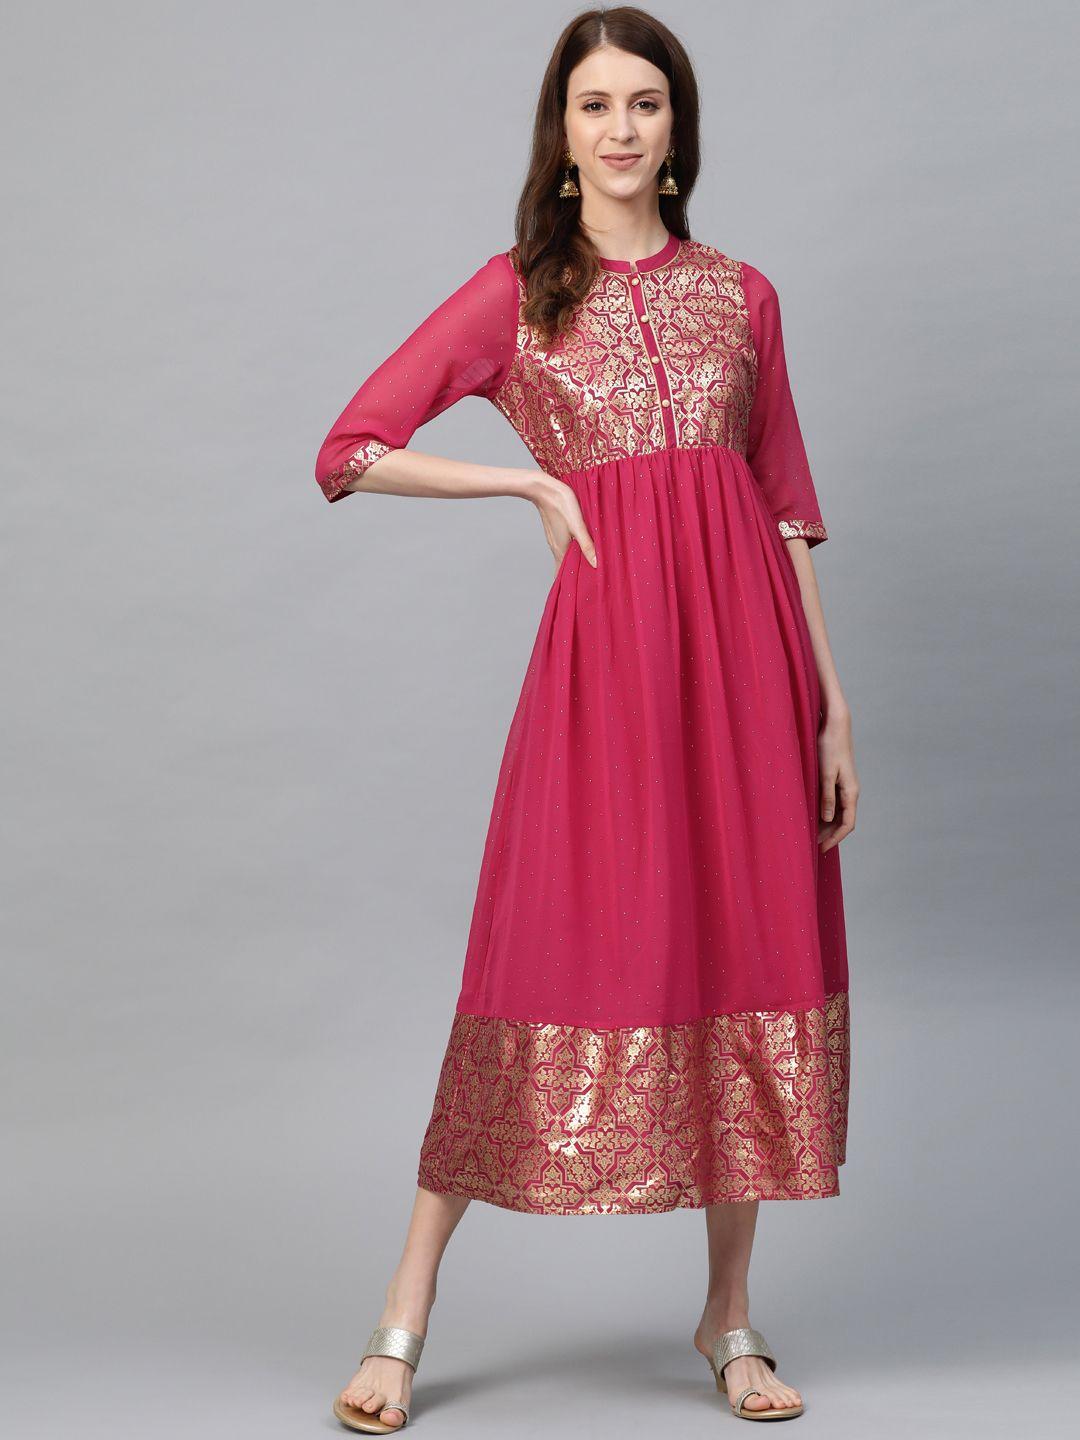 aurelia women pink & golden printed a-line dress